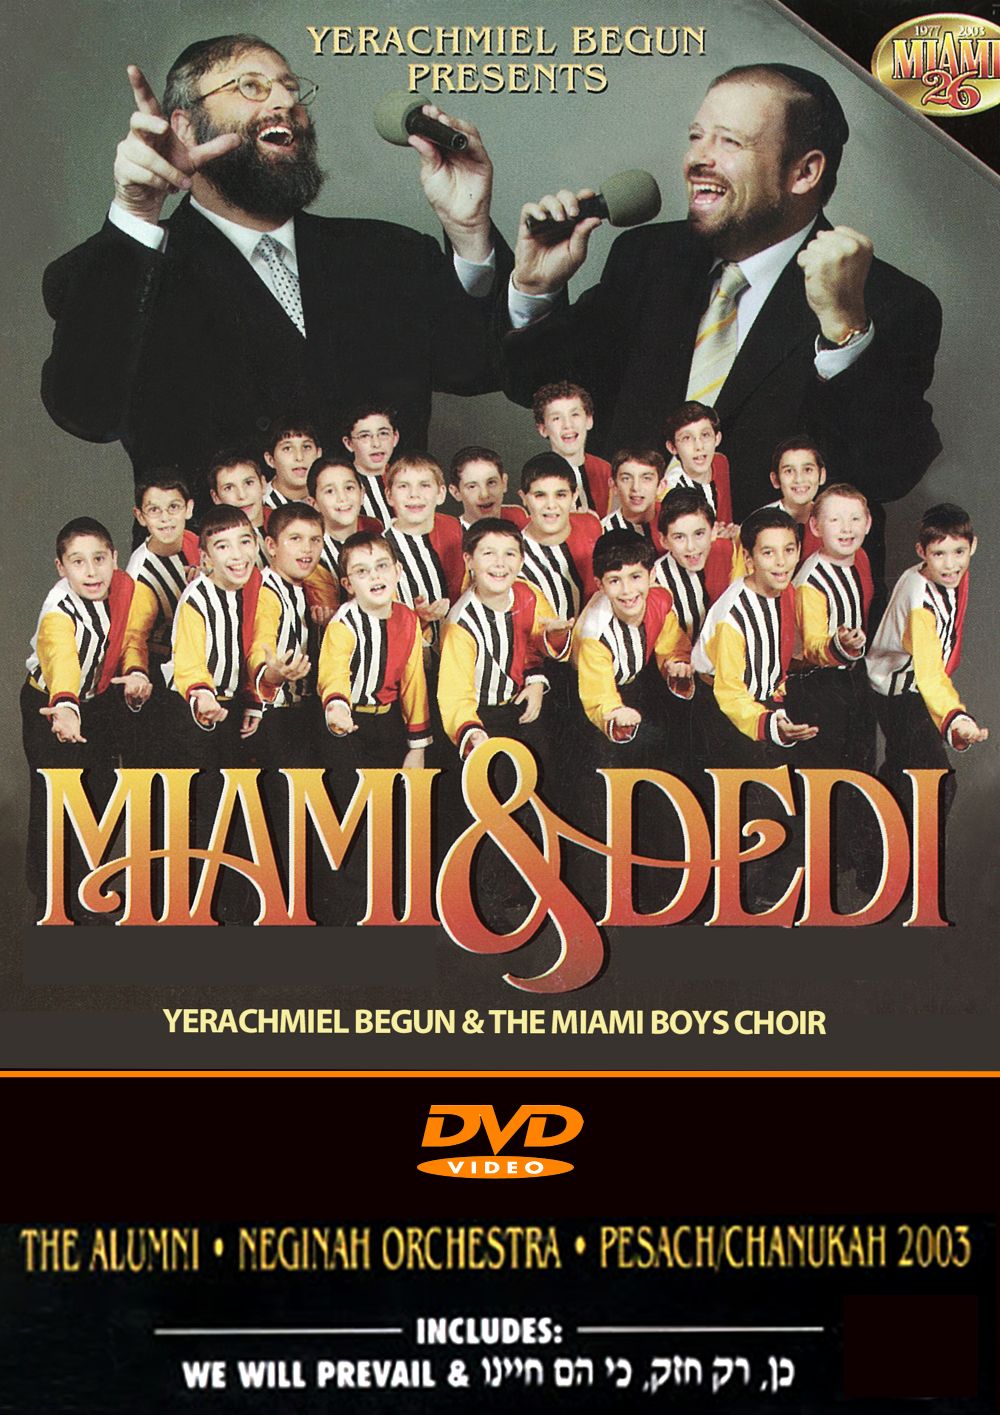 MIAMI 26 Miami Dedi (2003)